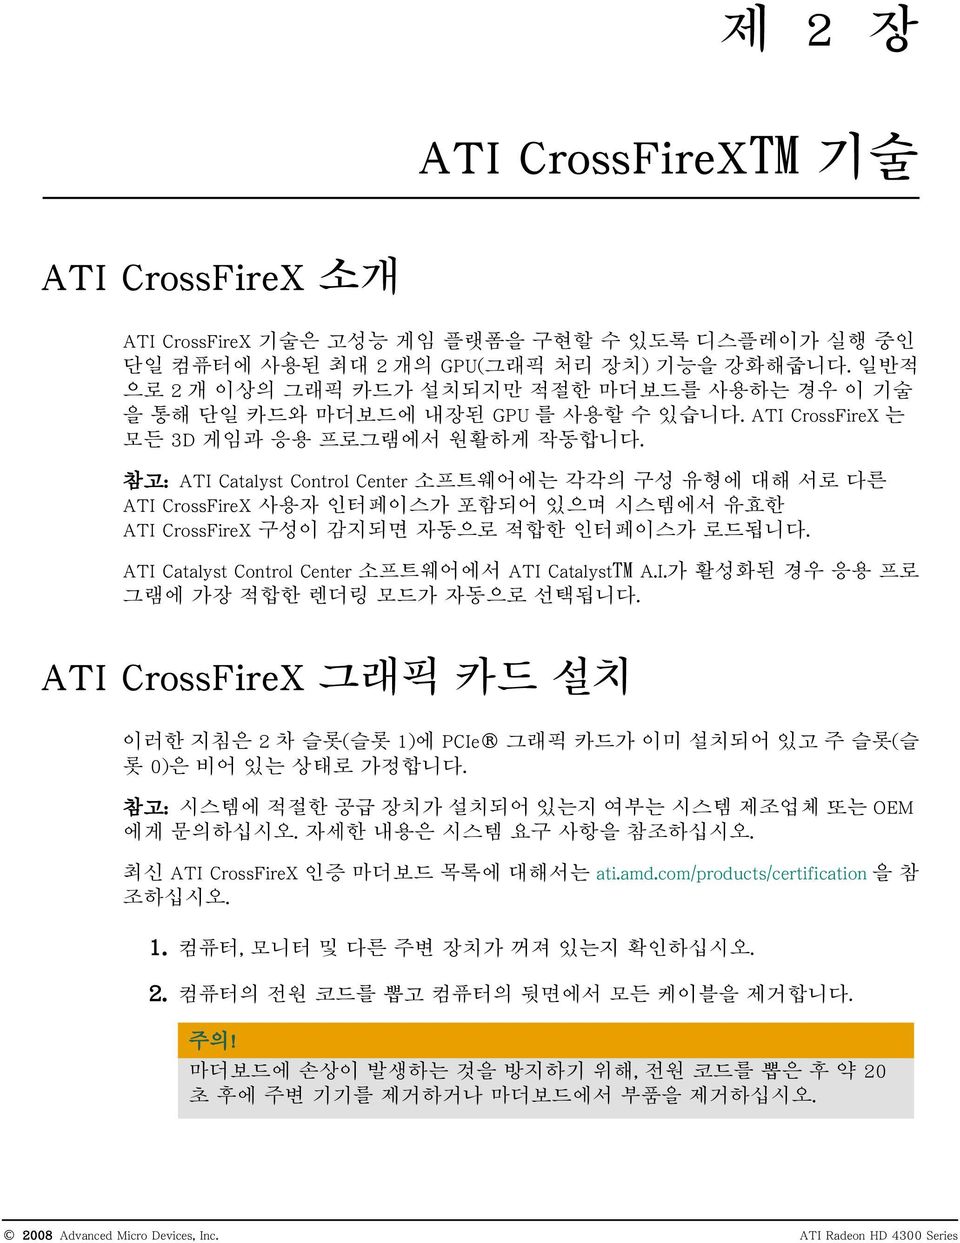 참고: ATI Catalyst Control Center 소프트웨어에는 각각의 구성 유형에 대해 서로 다른 ATI CrossFireX 사용자 인터페이스가 포함되어 있으며 시스템에서 유효한 ATI CrossFireX 구성이 감지되면 자동으로 적합한 인터페이스가 로드됩니다.